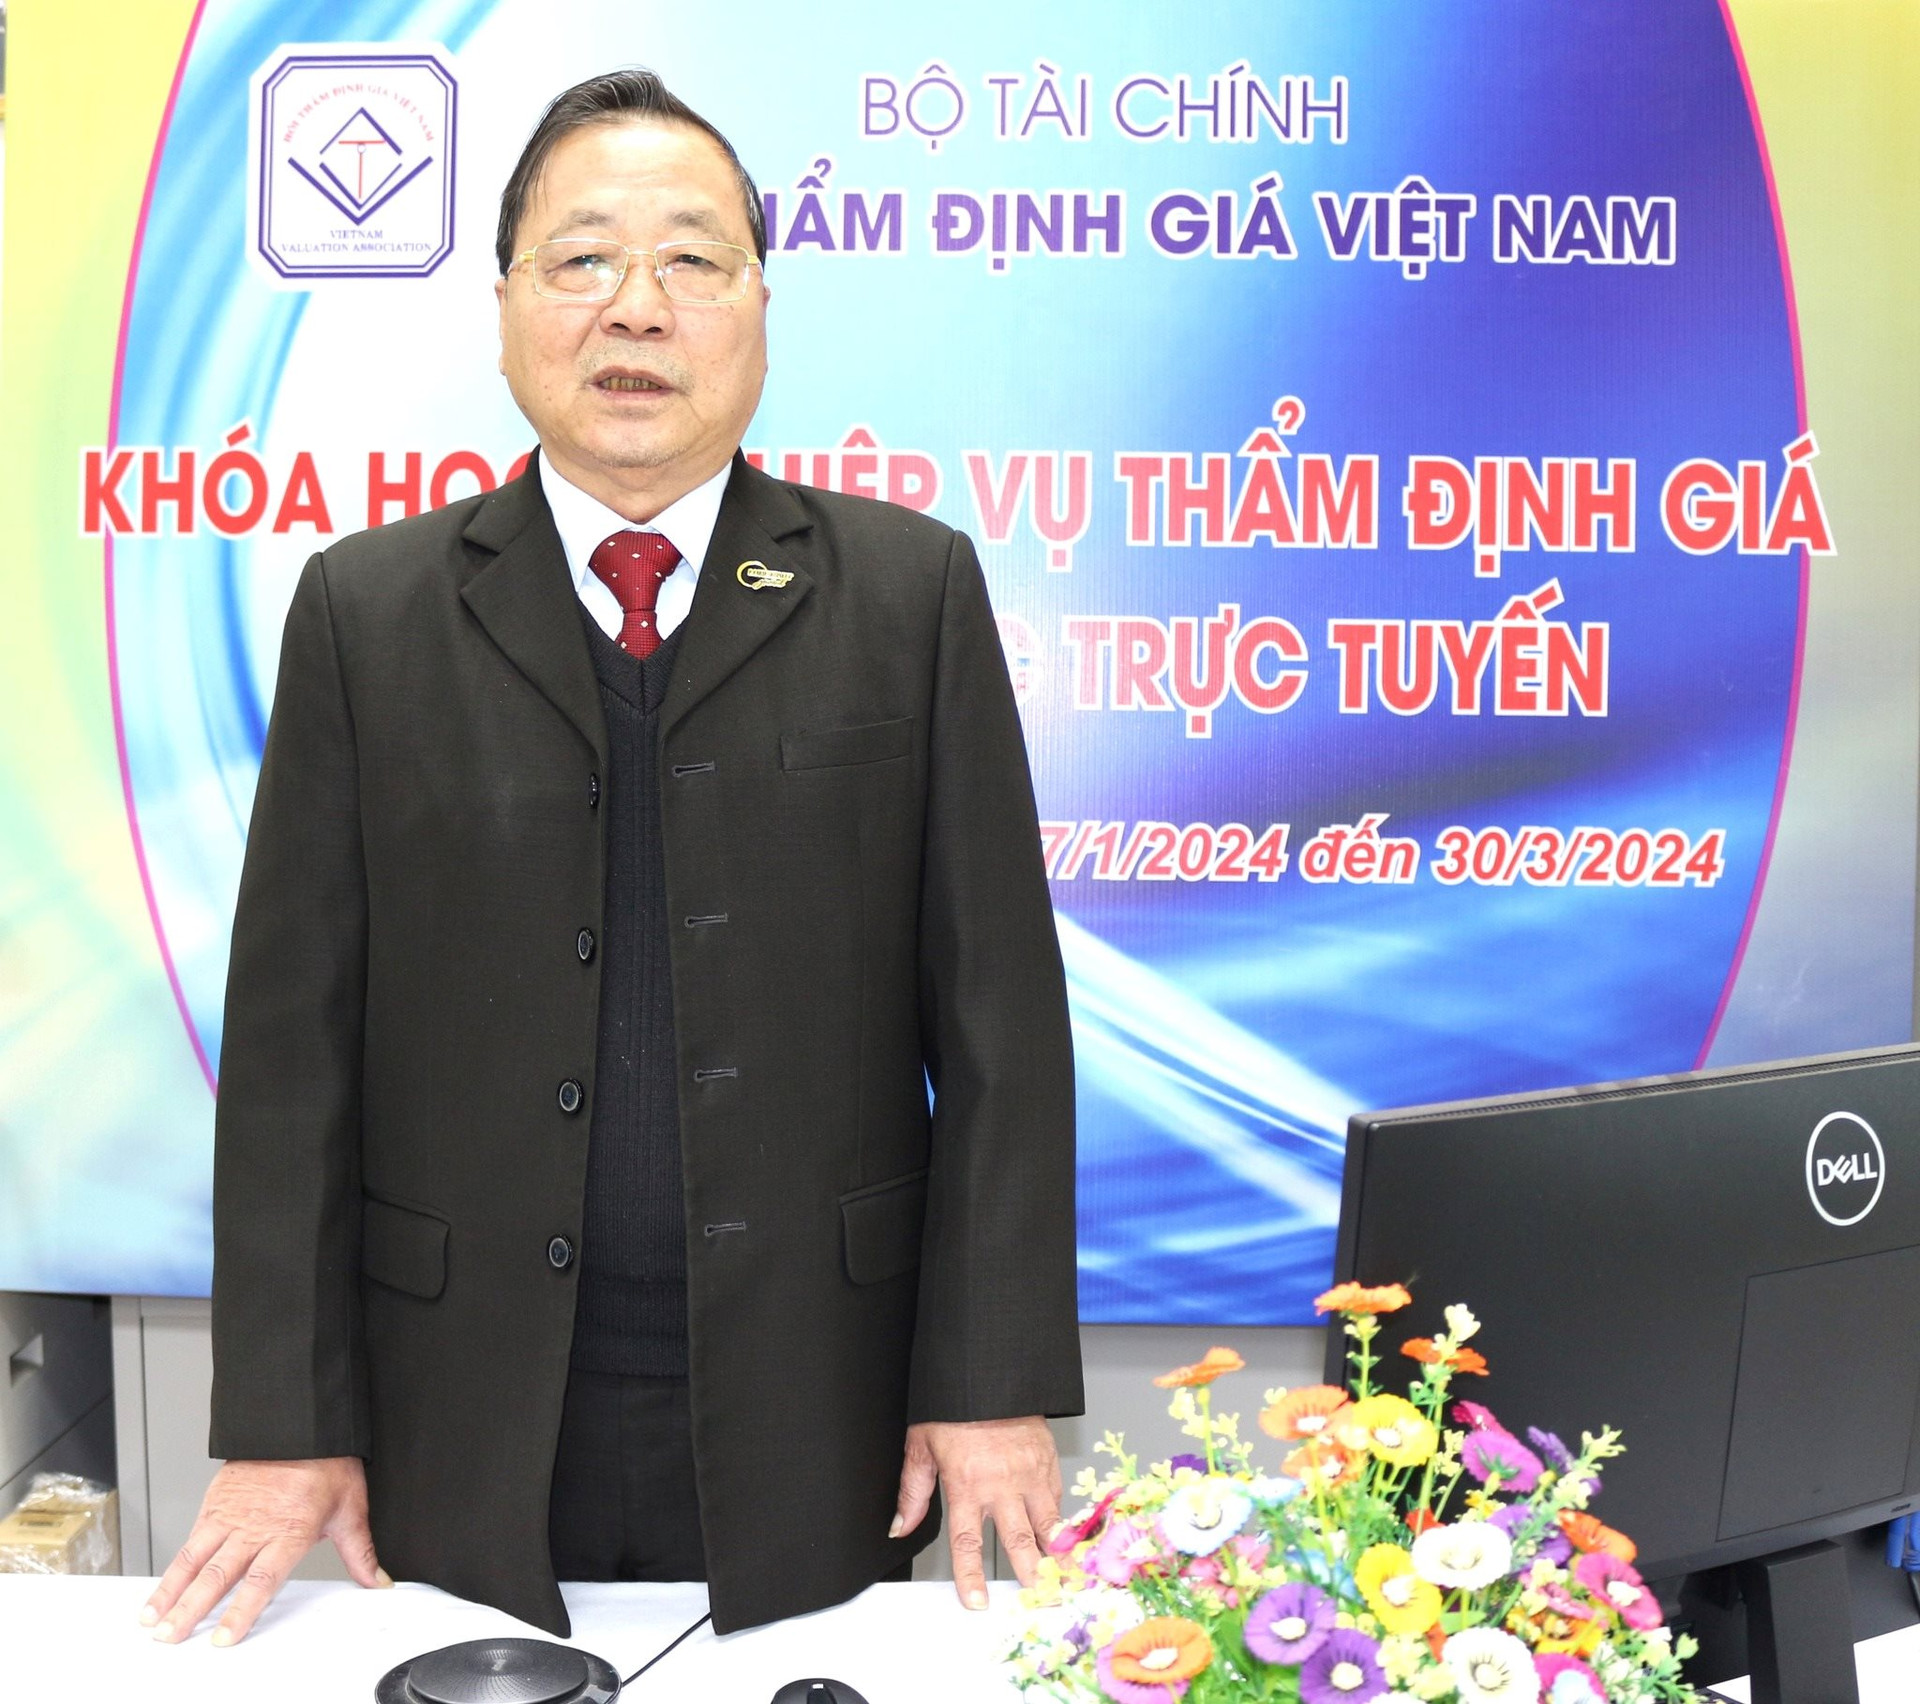 Hội Thẩm định giá Việt Nam thông báo chiêu sinh khoá đào tạo và cấp chứng chỉ nghiệp vụ Thẩm định giá